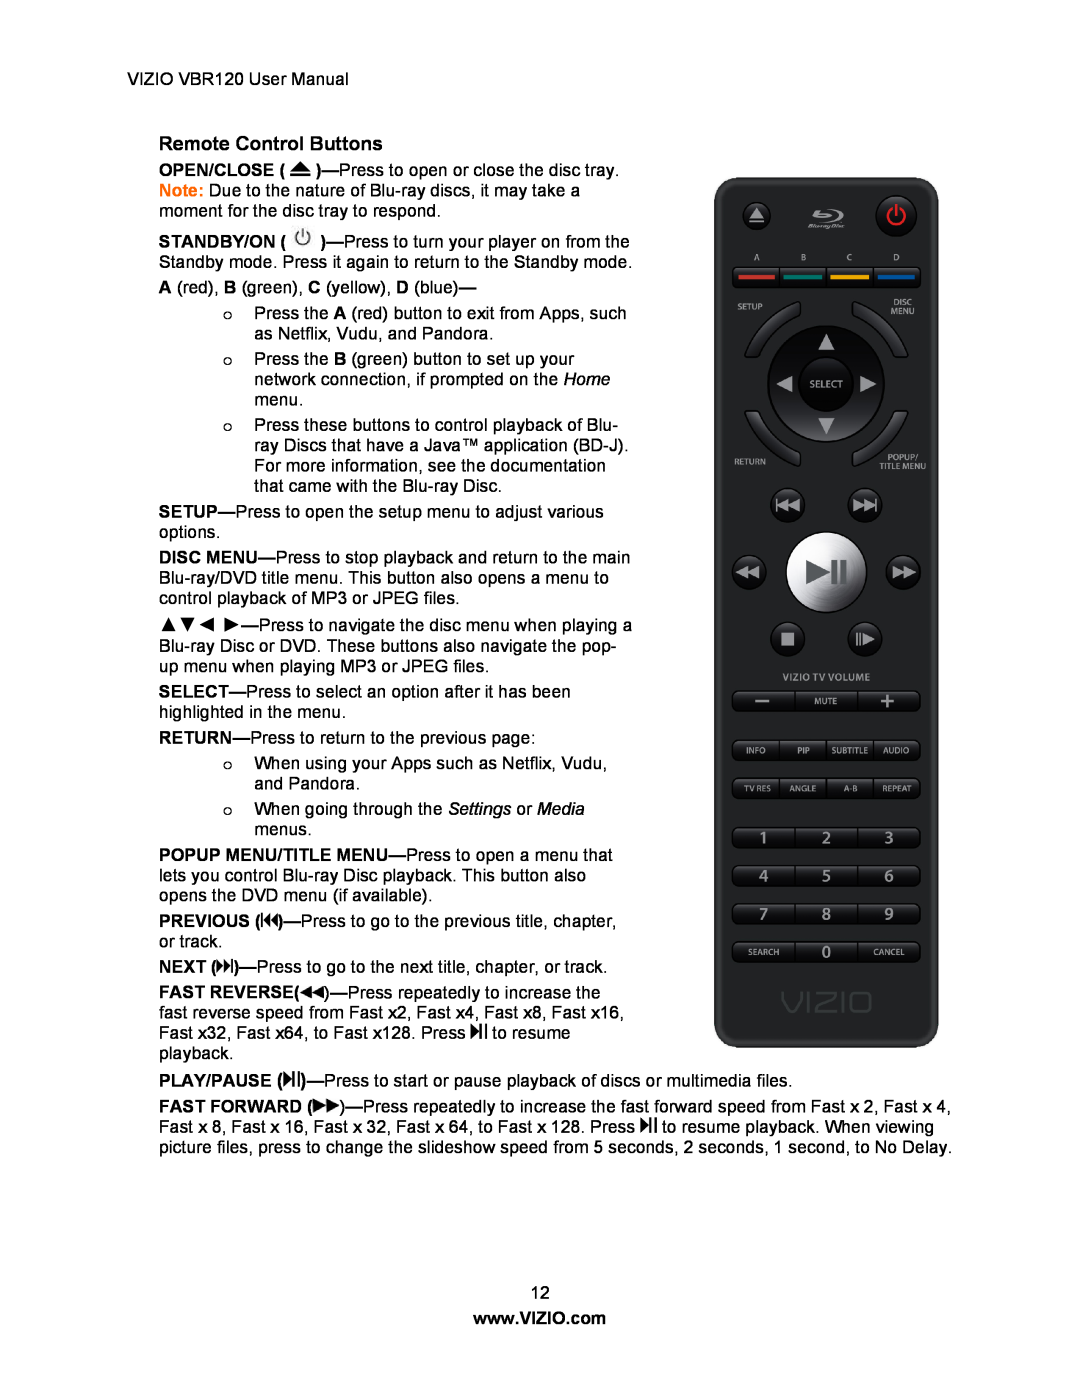 Vizio VBR 120 user manual Remote Control Buttons 